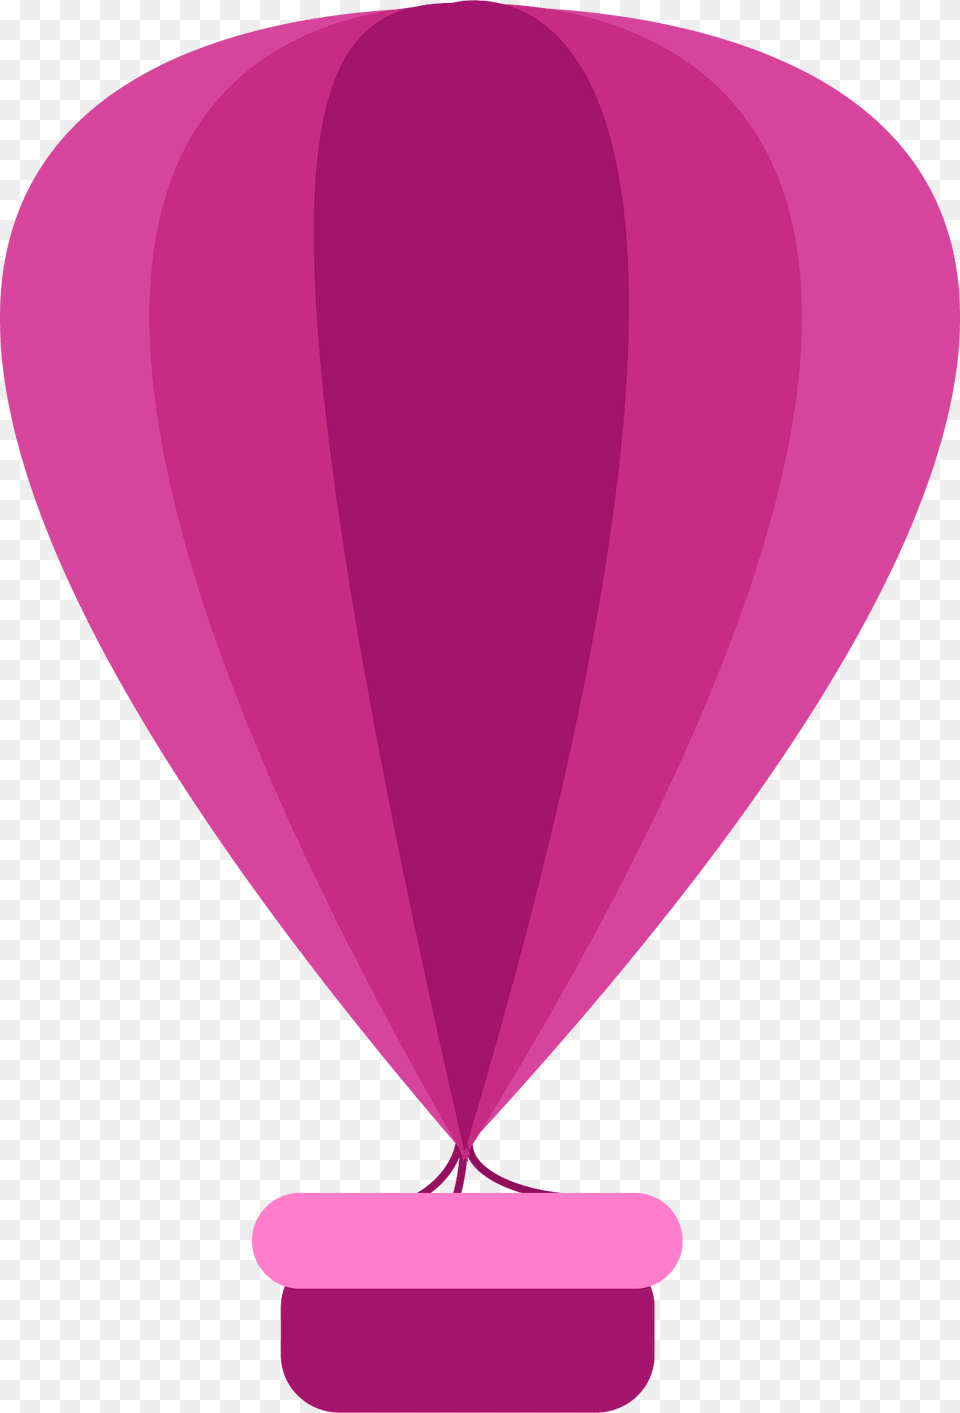 Balloon Clipart, Aircraft, Hot Air Balloon, Transportation, Vehicle Png Image